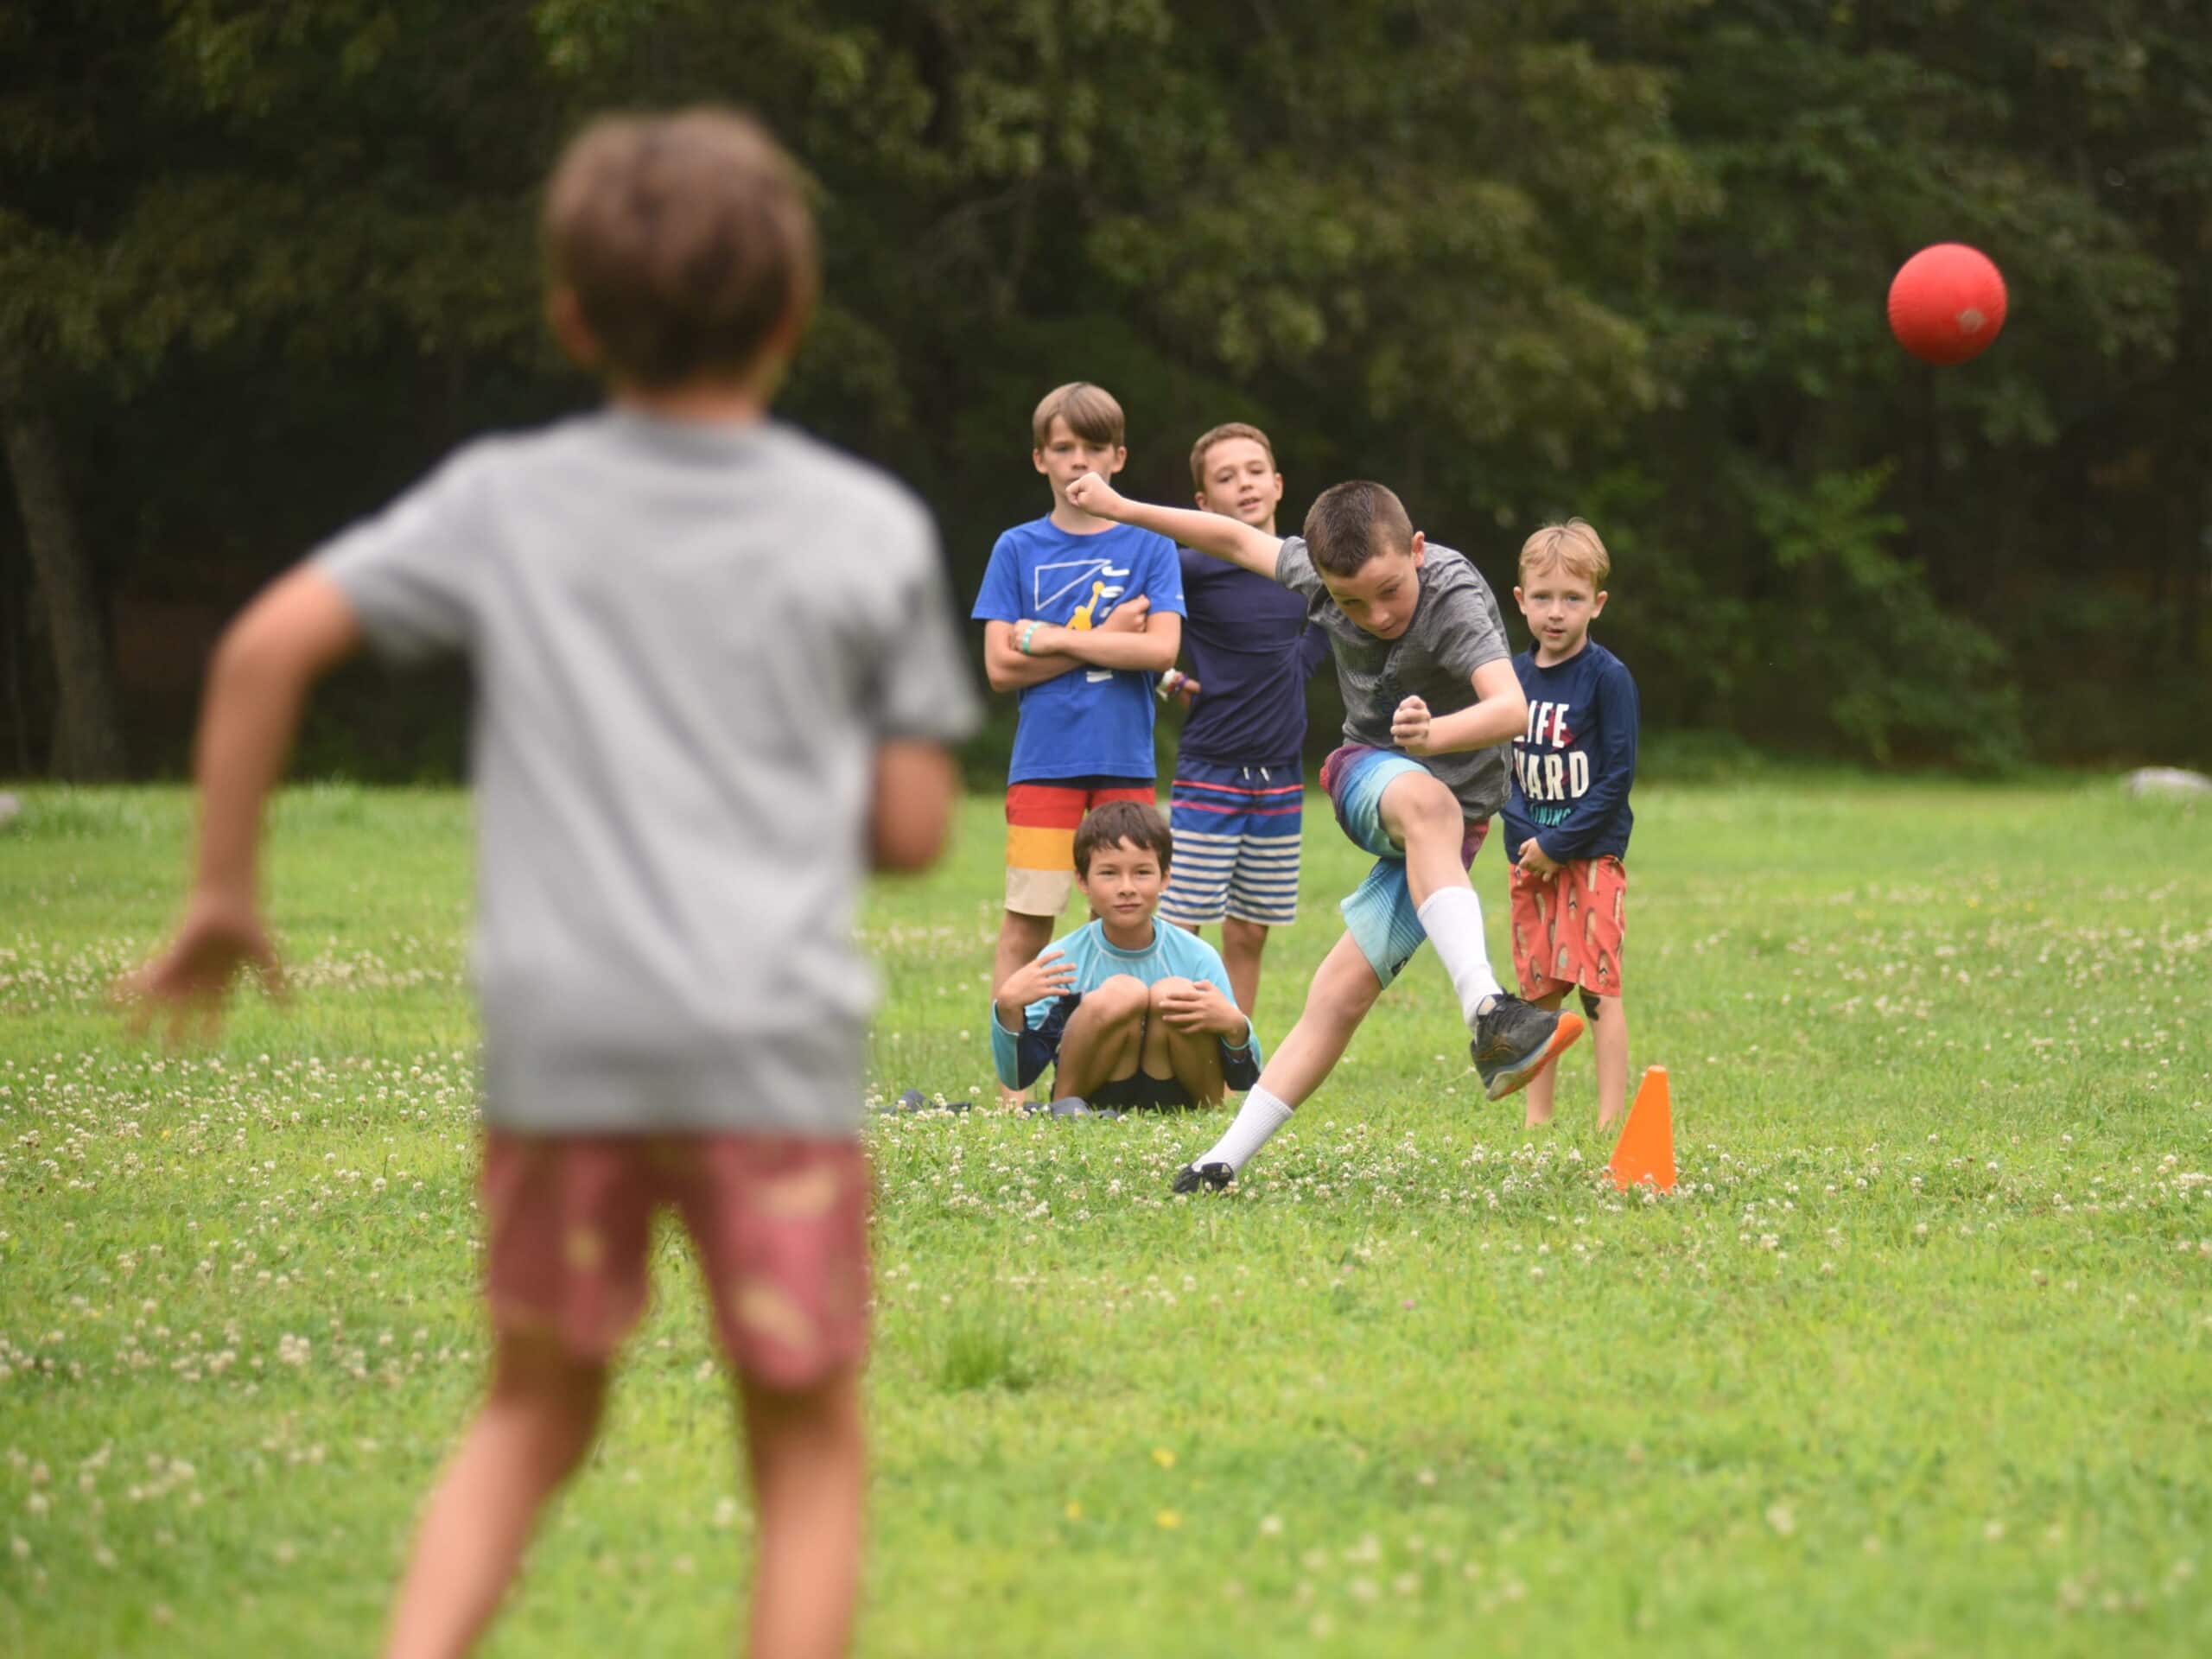 Kids play kickball in a field.